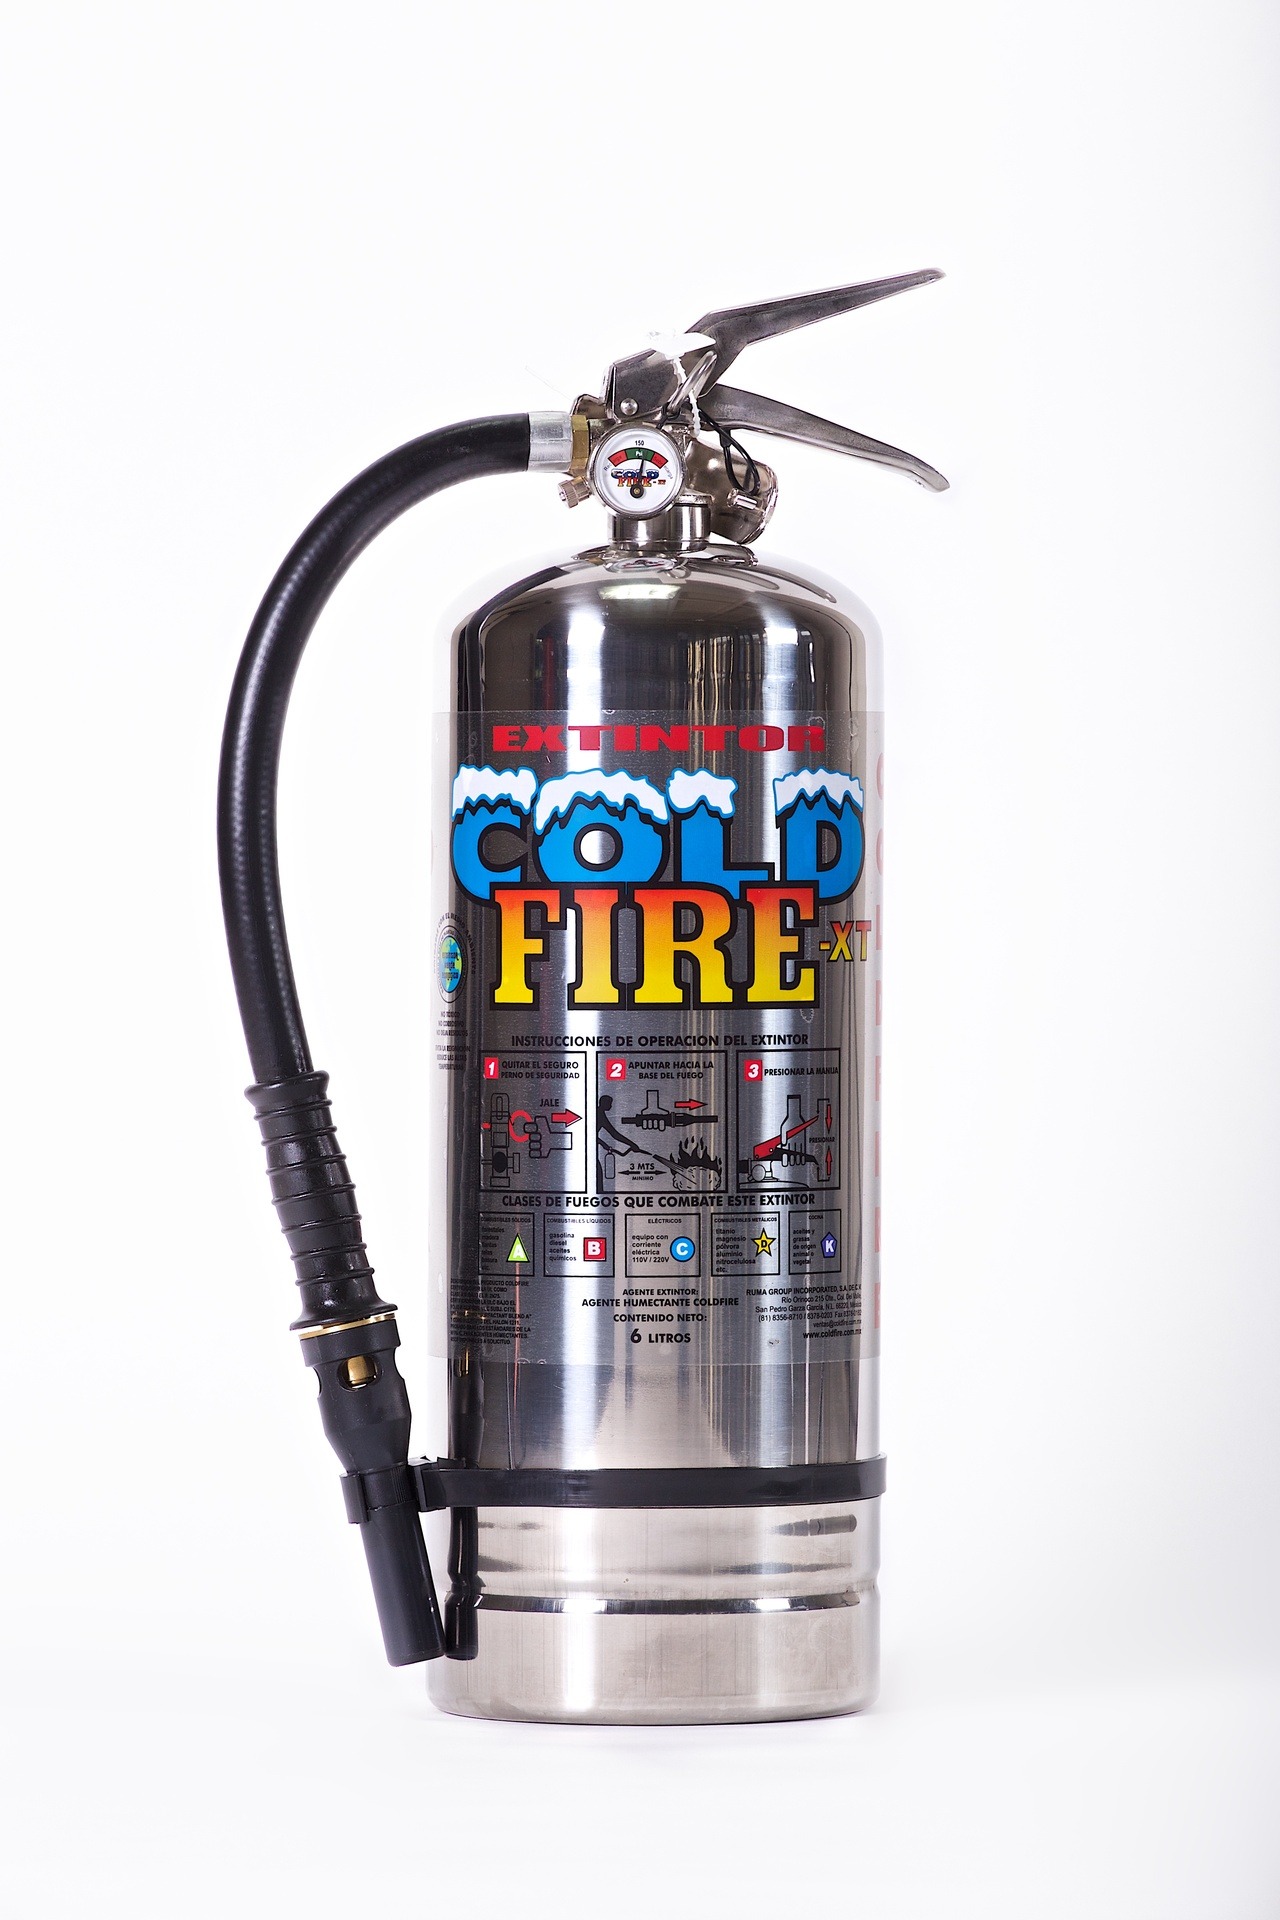 Extintores Cold Fire — Para esta cantidad de incendios forestales